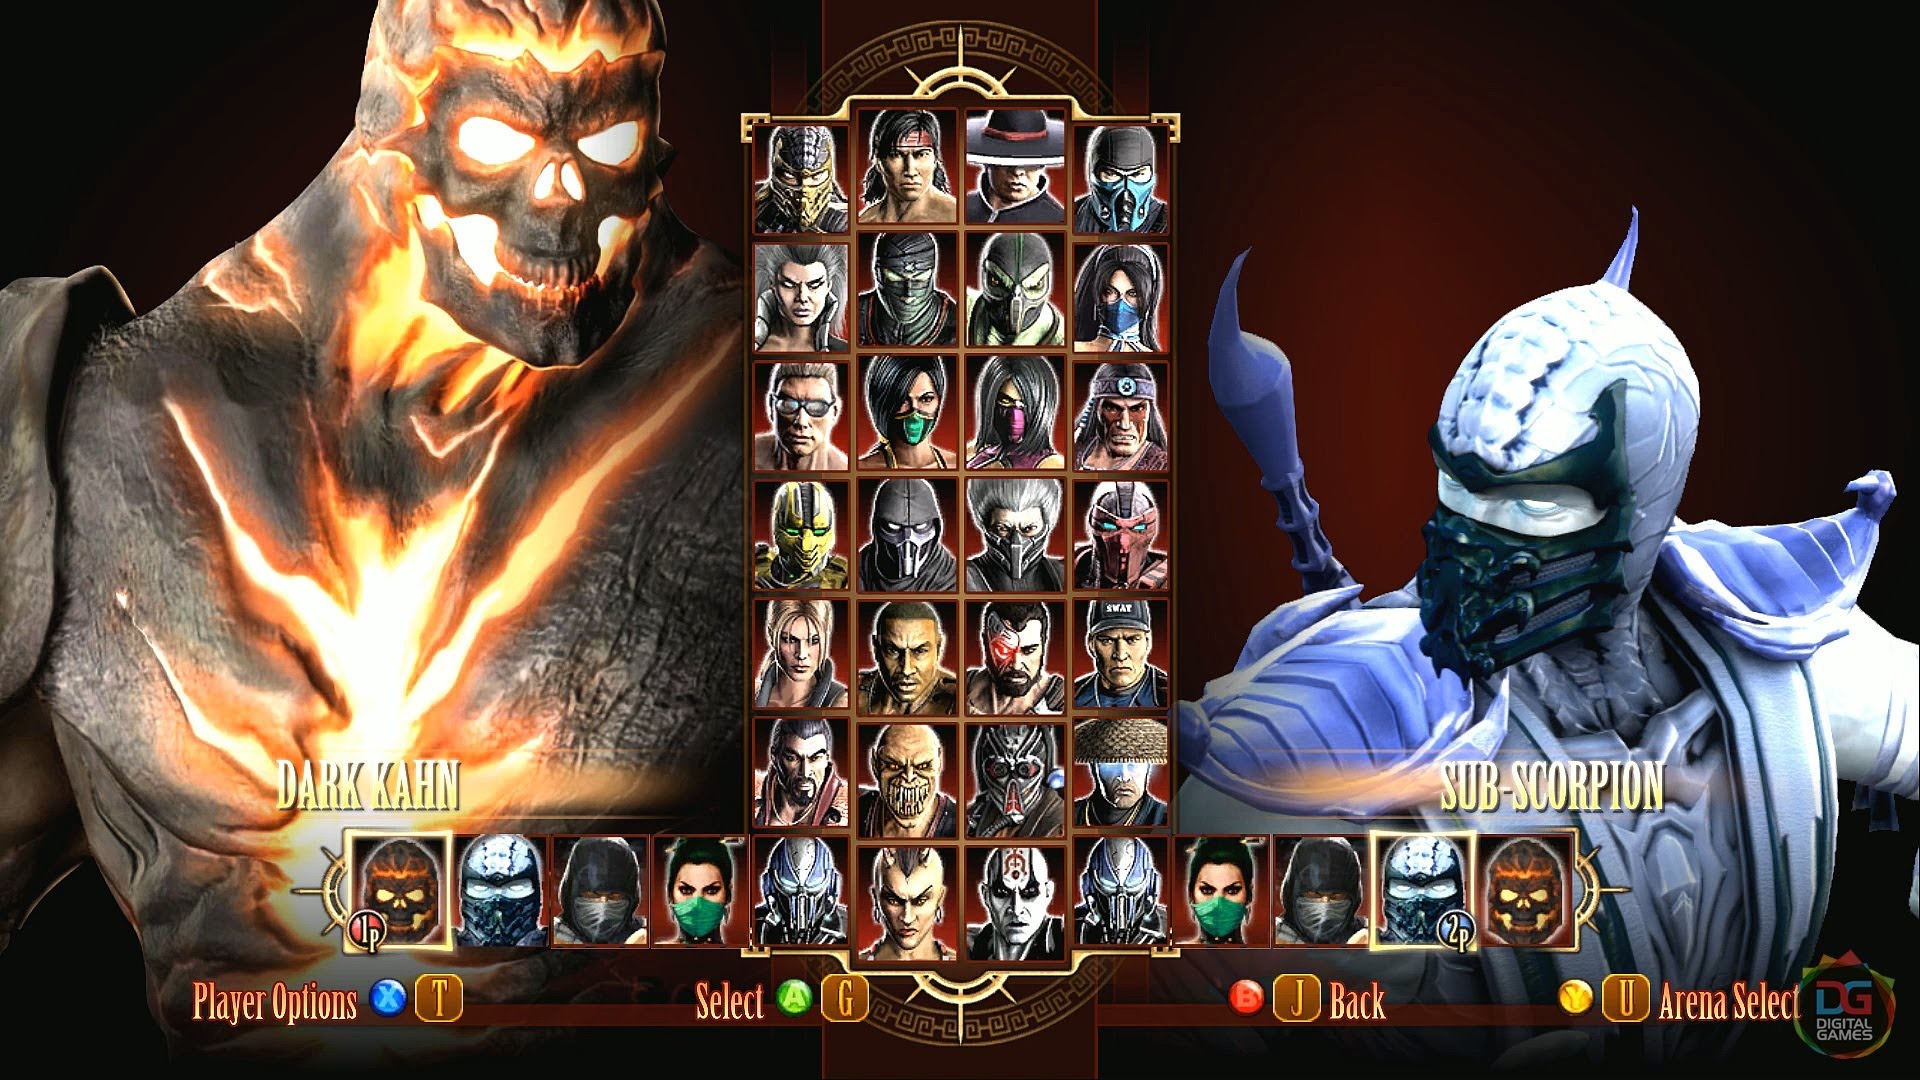 Mortal Kombat 9 Backgrounds, Compatible - PC, Mobile, Gadgets| 1920x1080 px